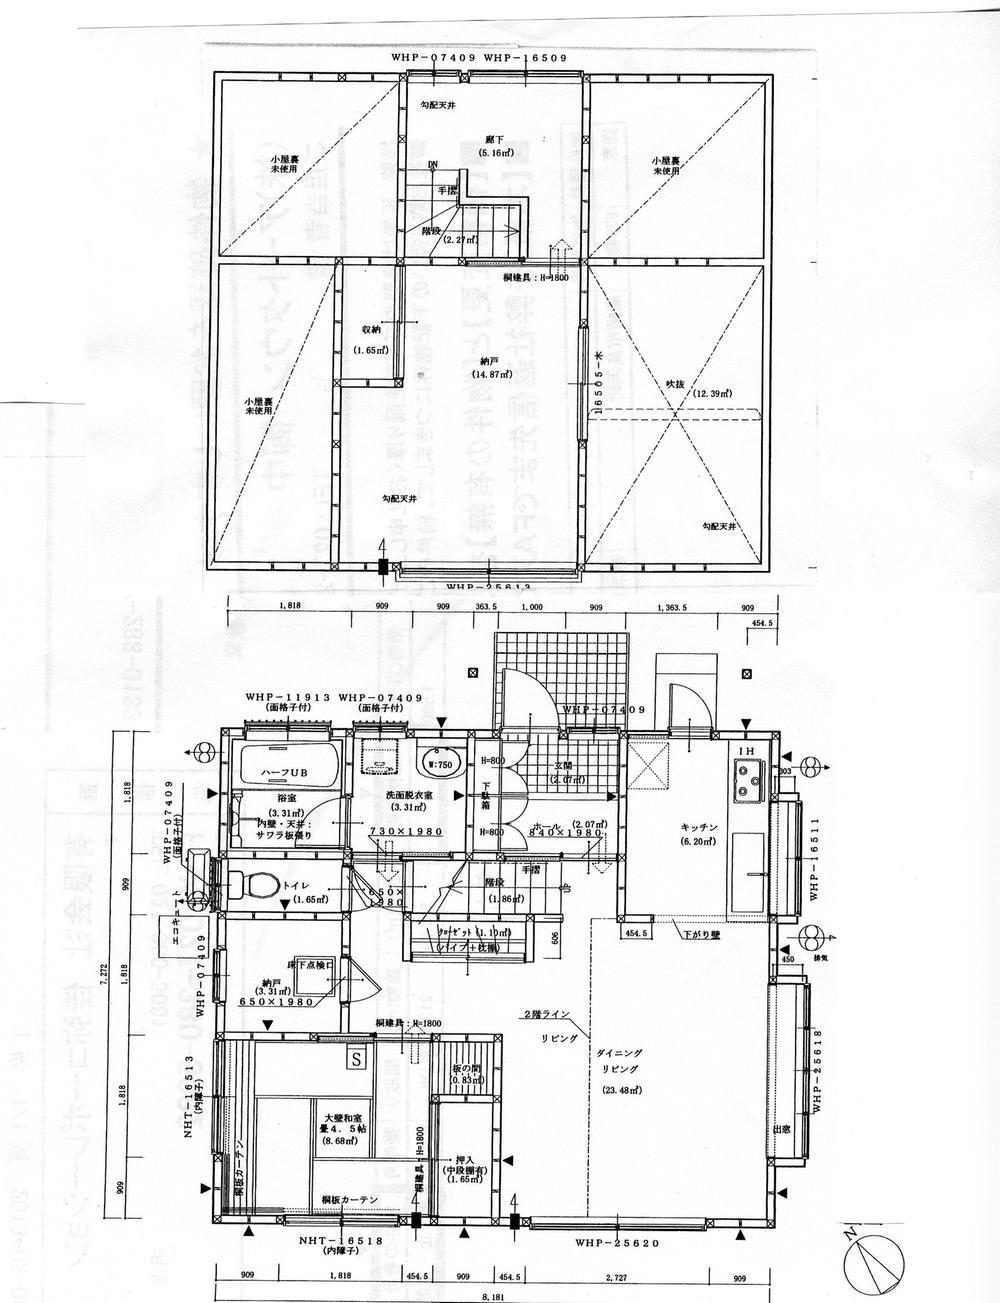 Floor plan. 23.8 million yen, 2LDK, Land area 512.16 sq m , Building area 83.45 sq m site (August 2013) Shooting